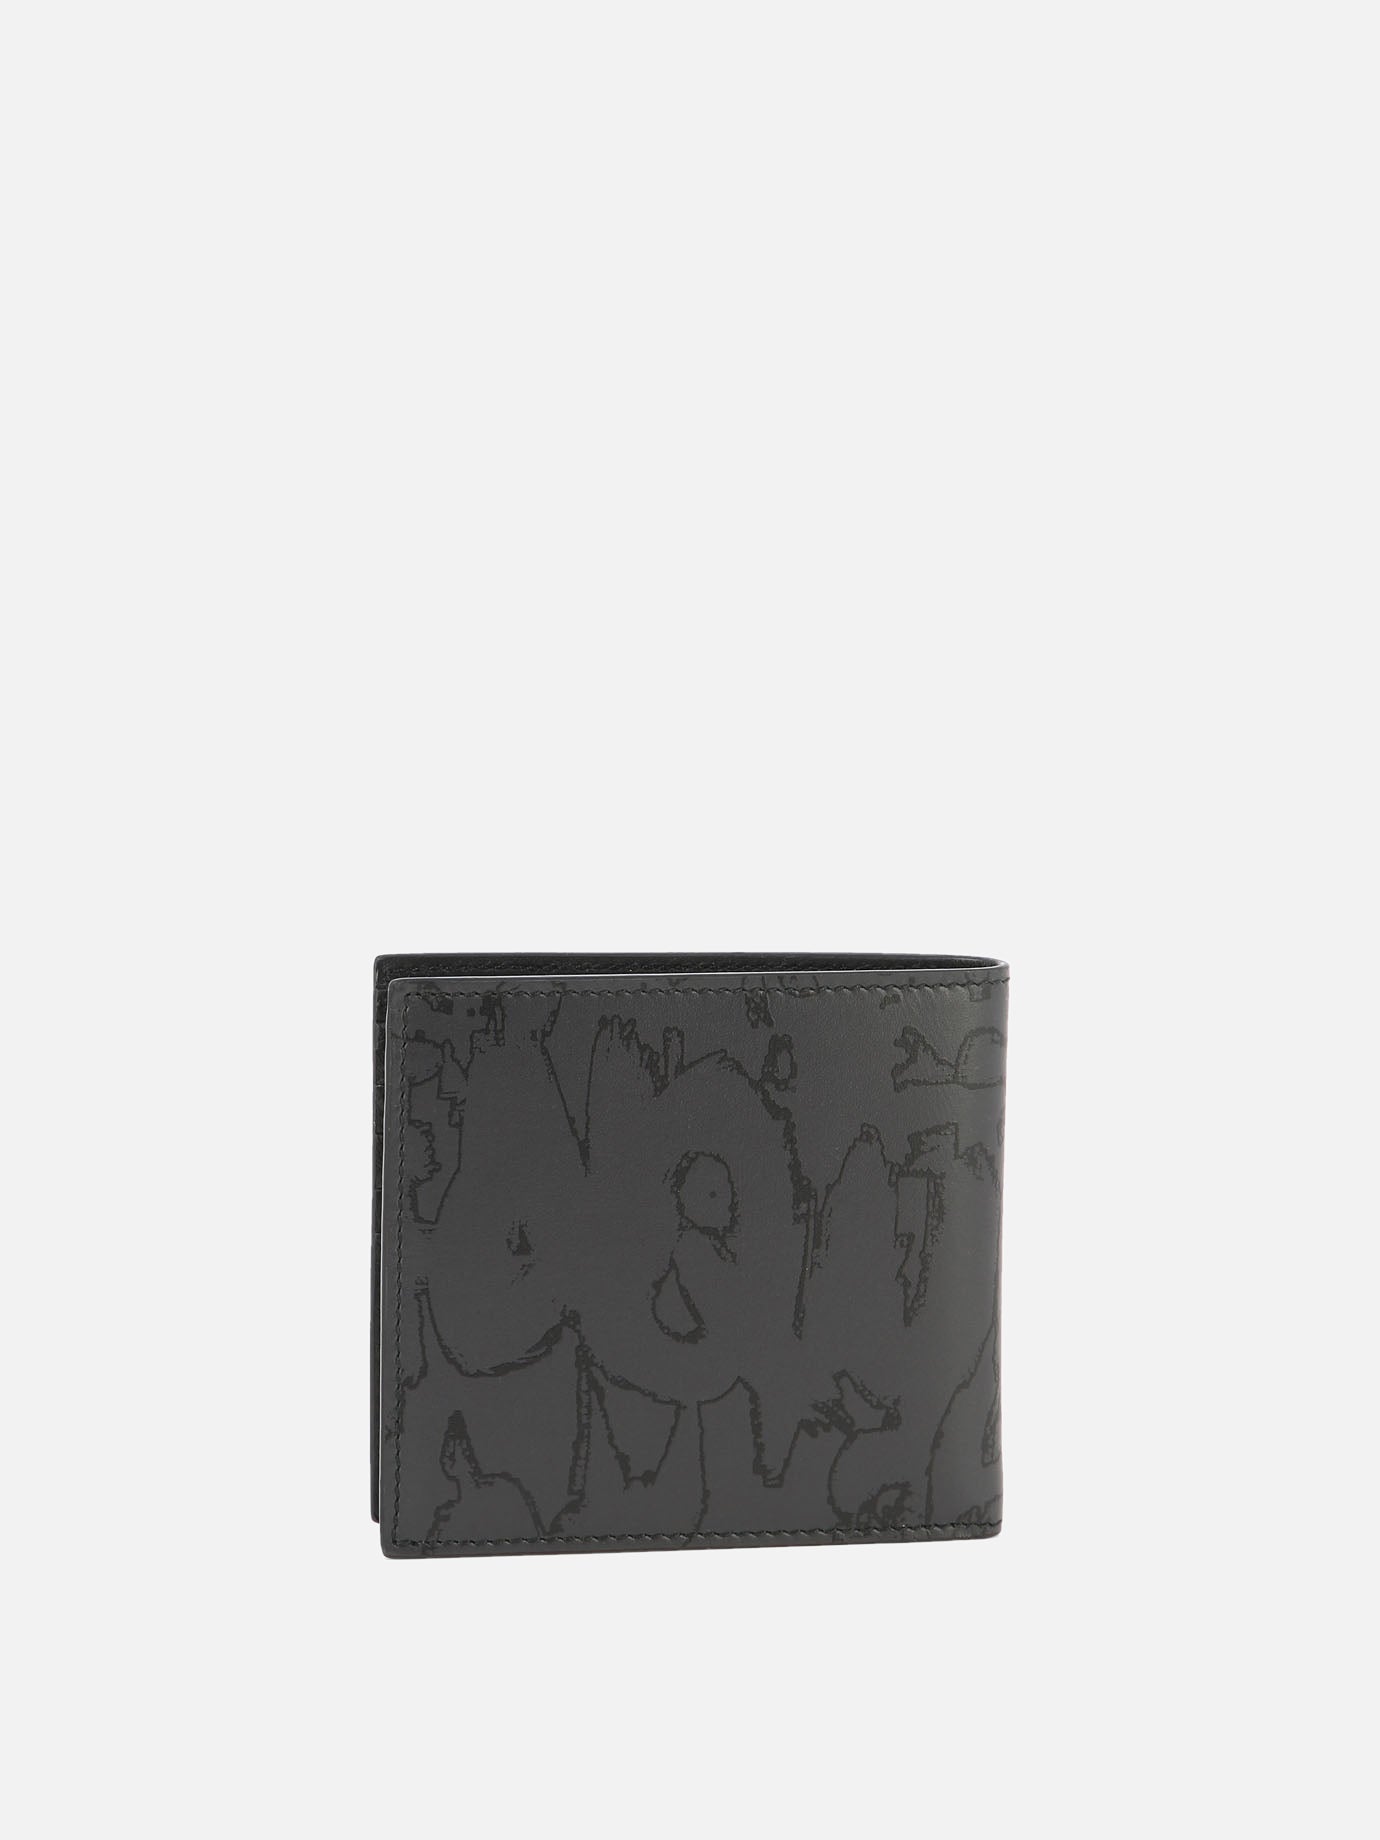 "McQueen Graffiti Billfold" wallet